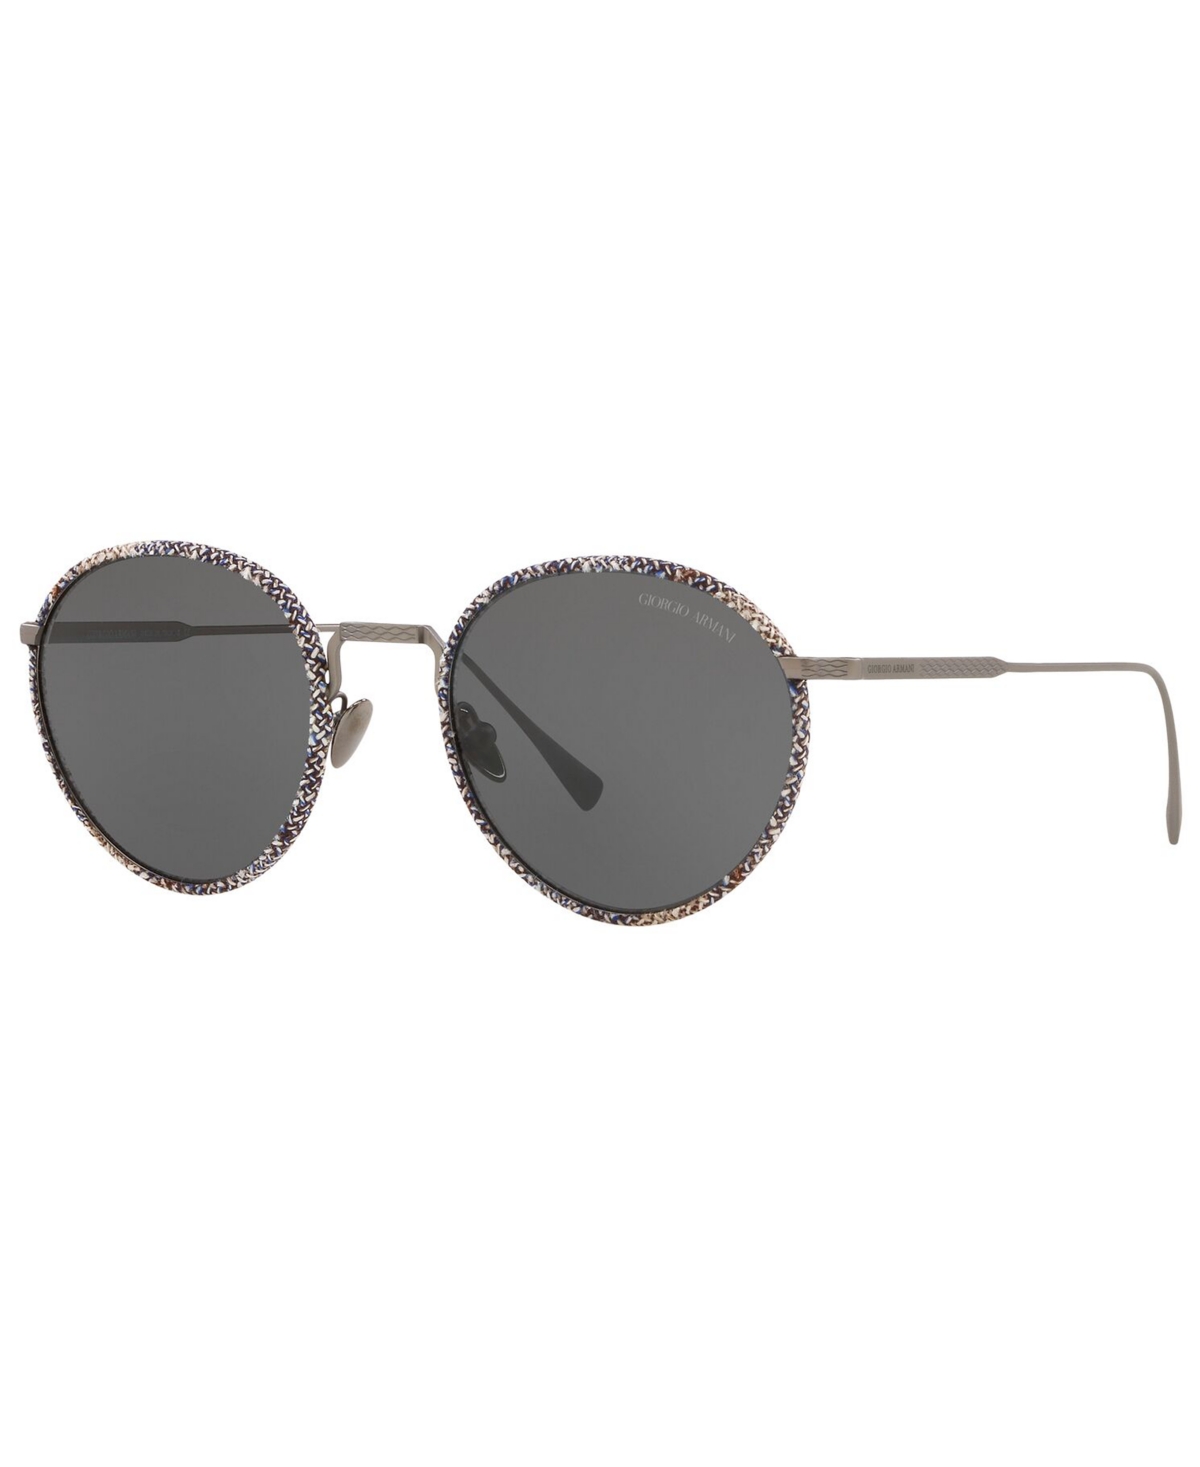 Giorgio Armani Men's Sunglasses In Matte Gunmetal,grey